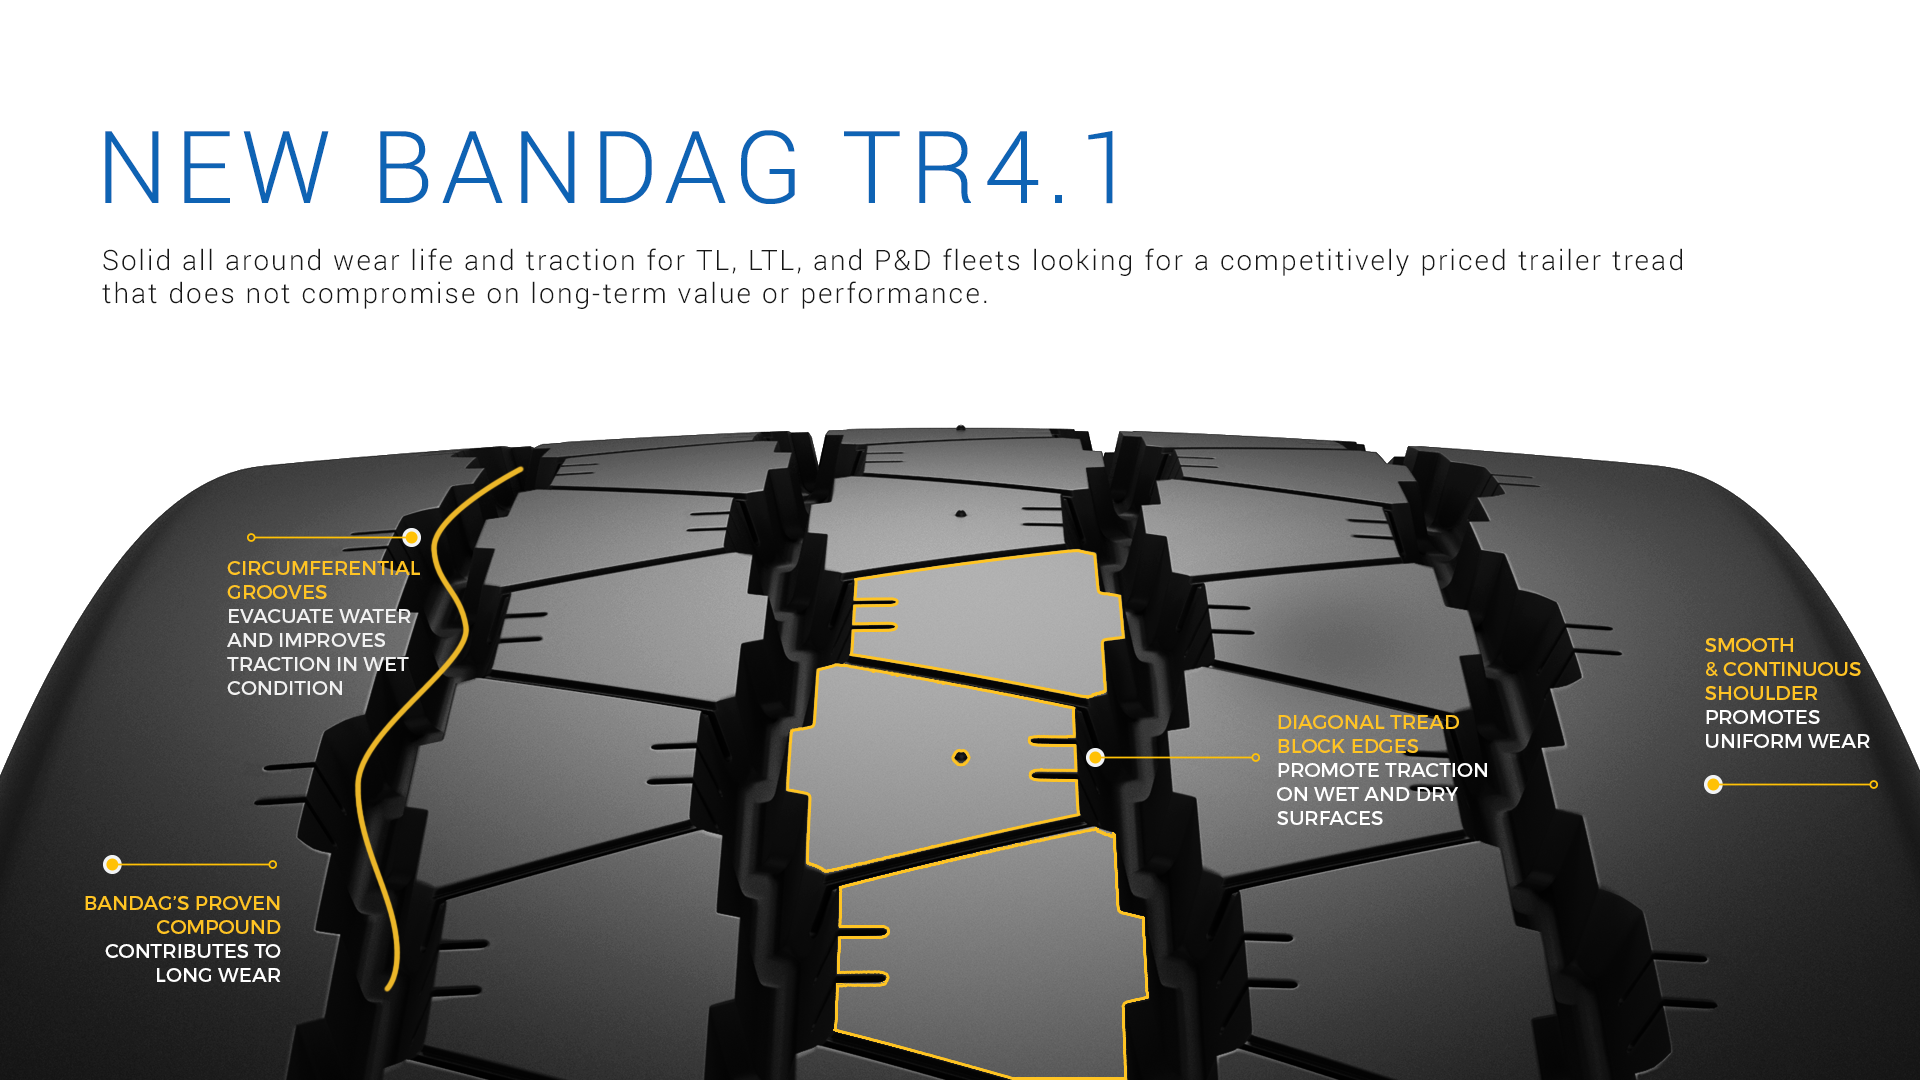 New Bandag TR4.1 retread